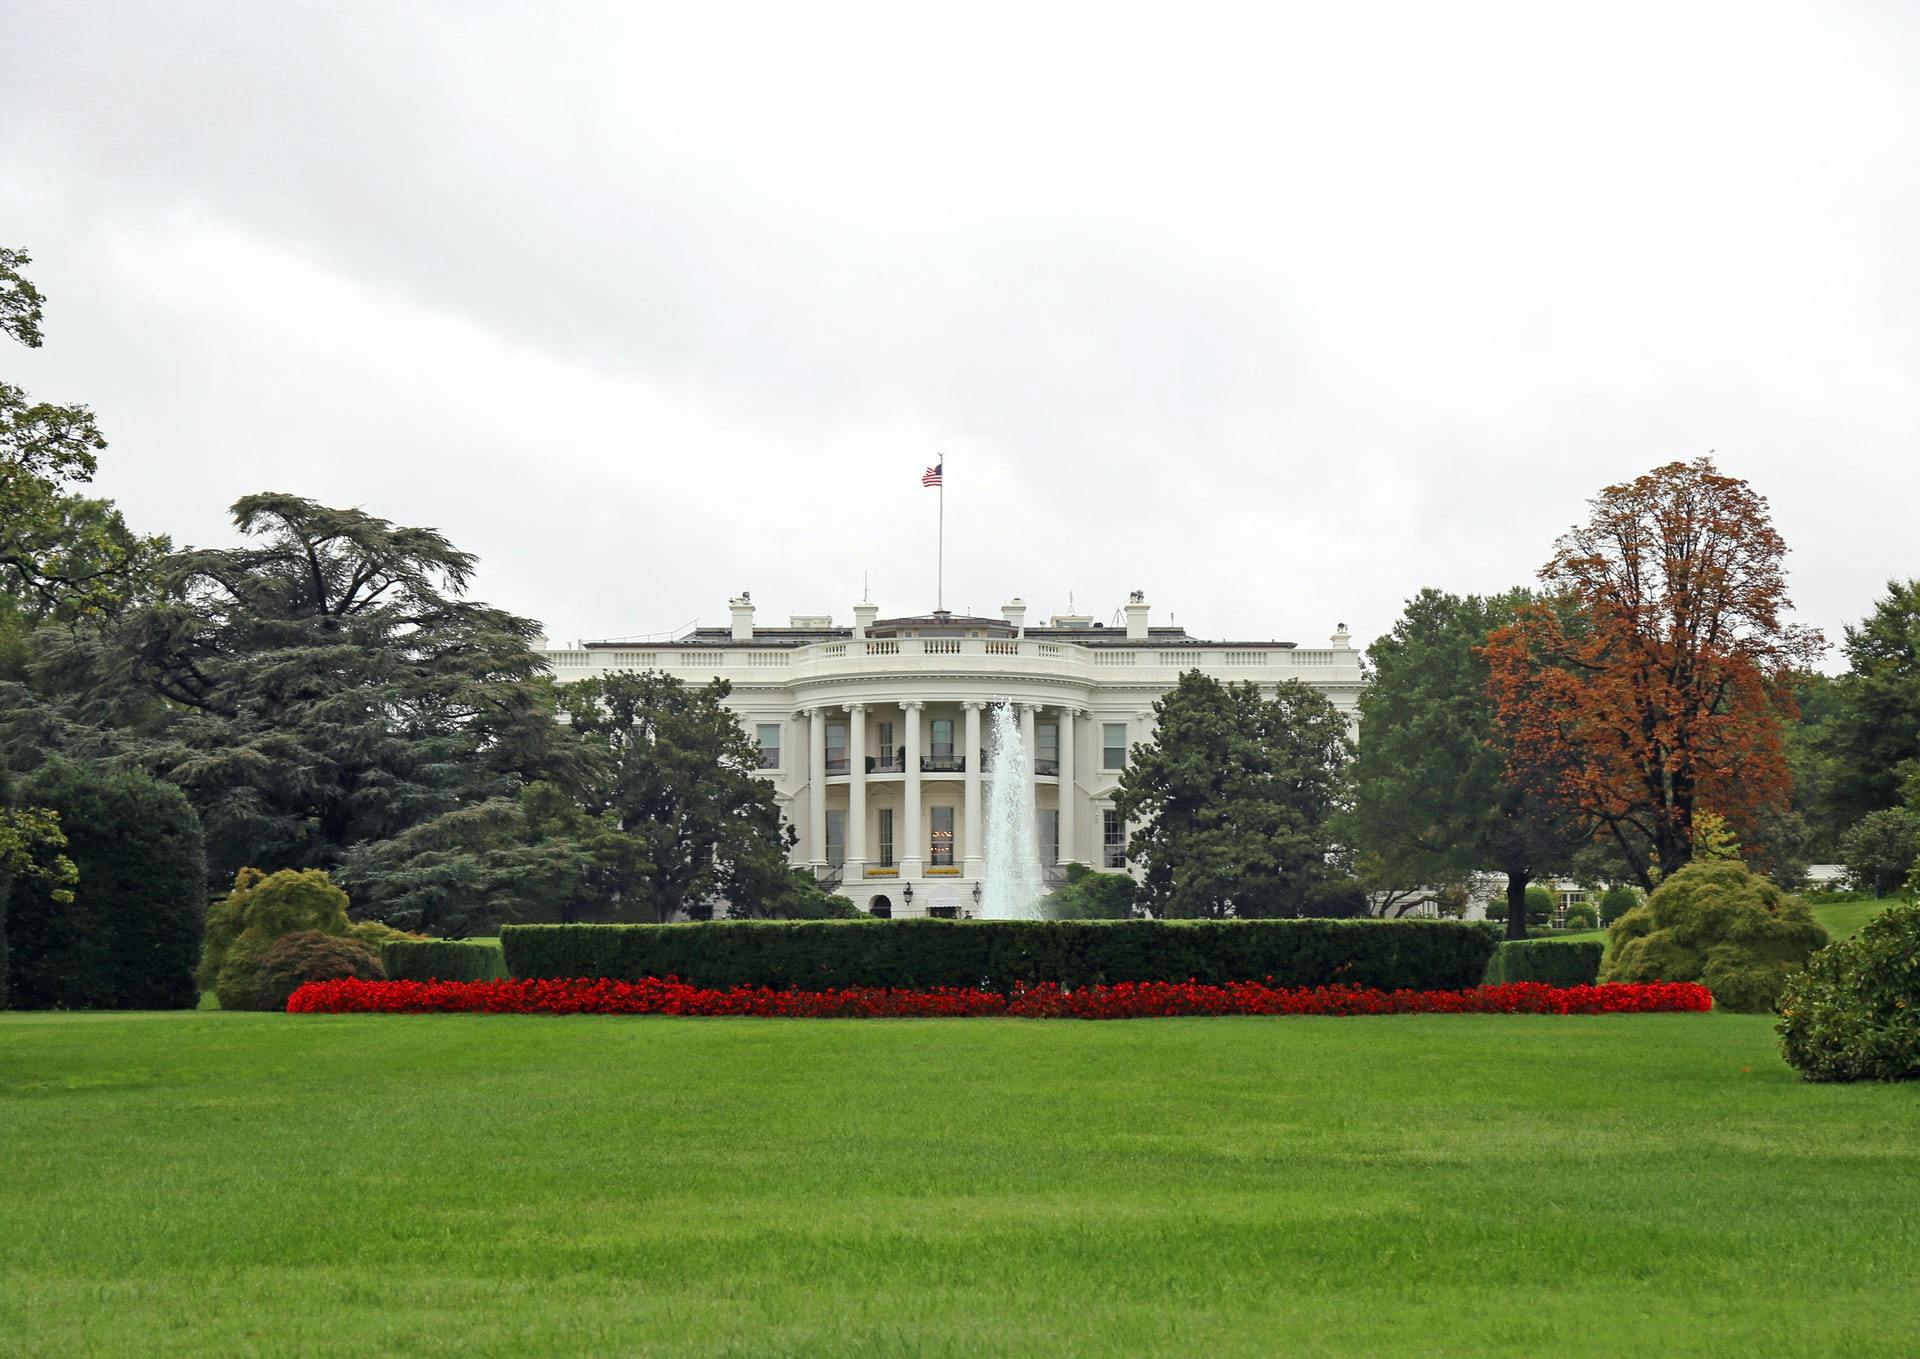 Take a virtual tour of the White House in Washington, D.C.